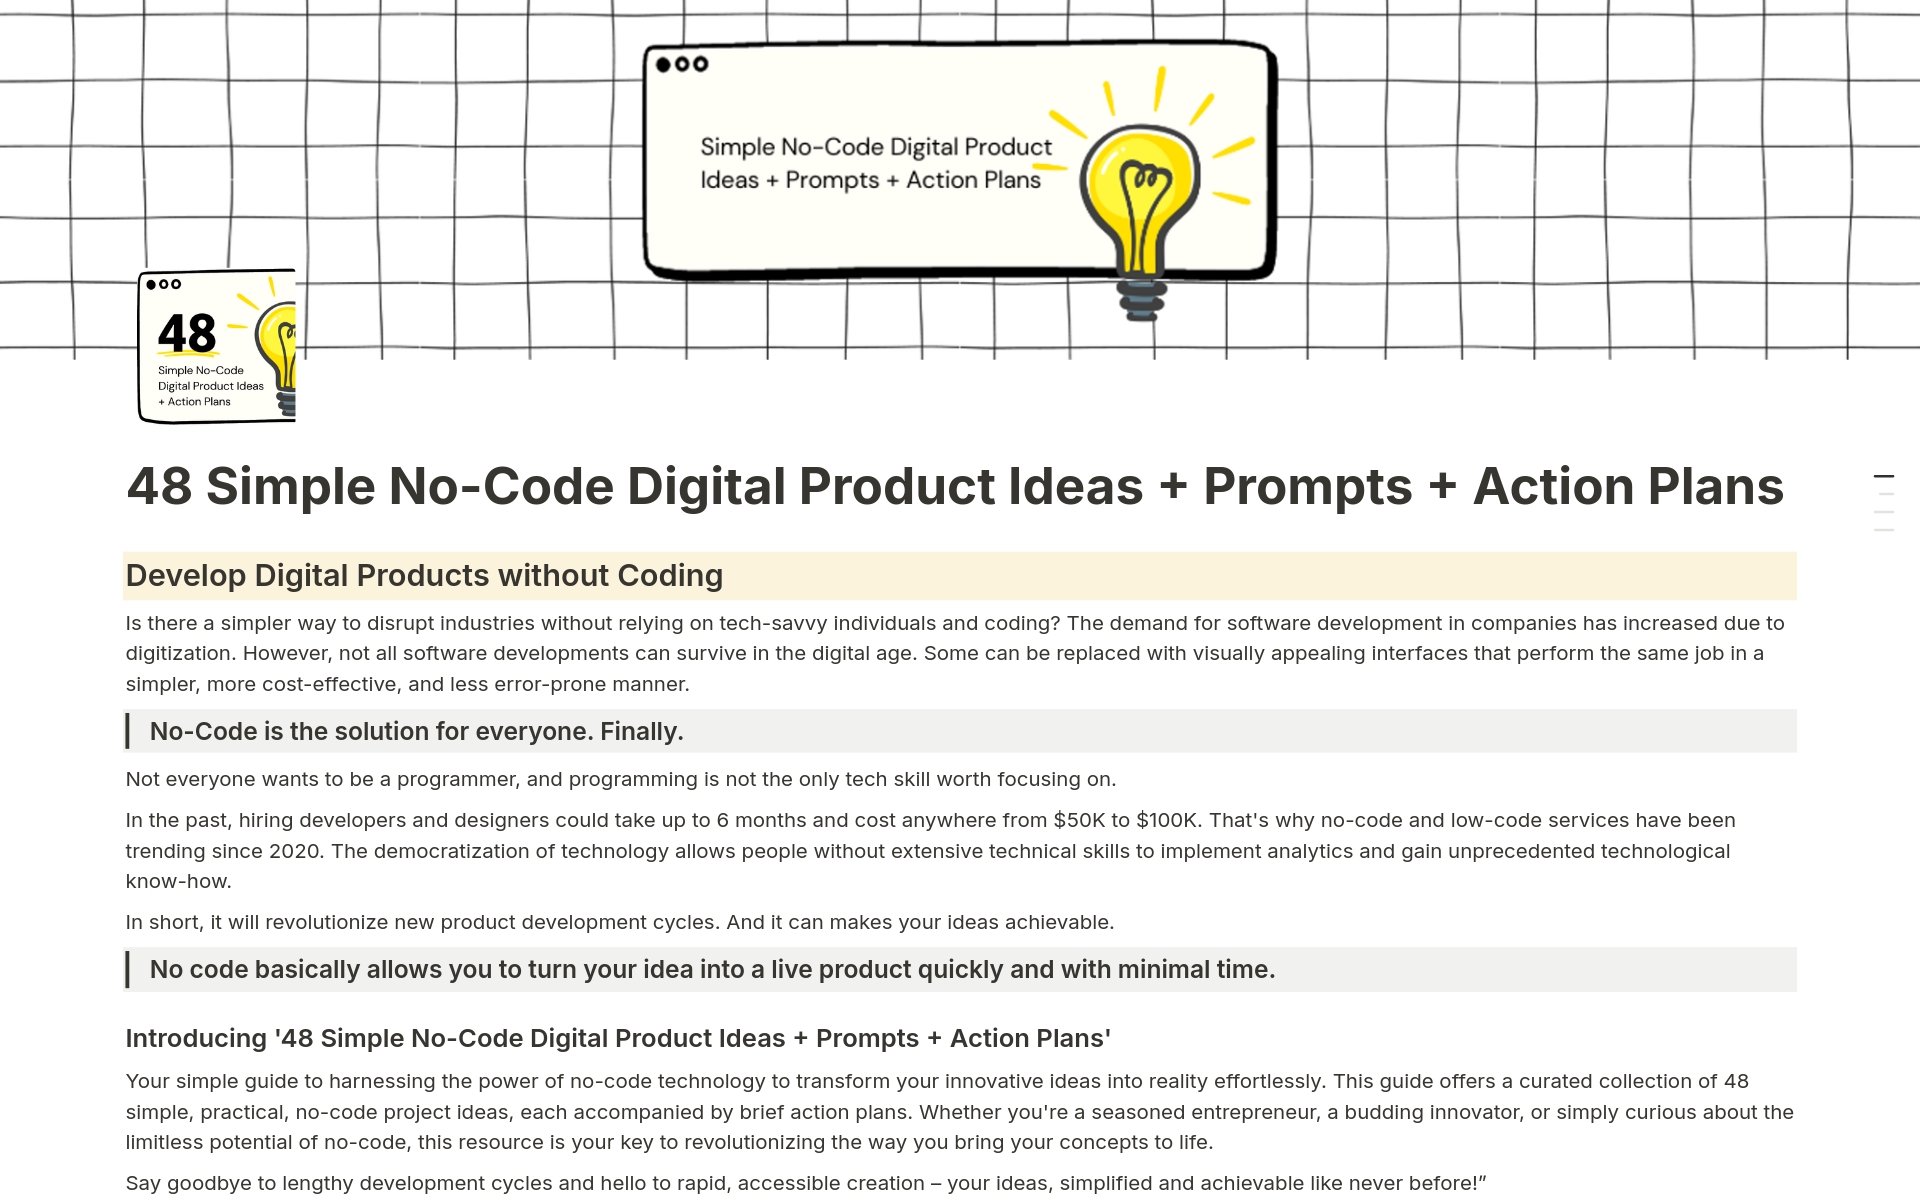 Uma prévia do modelo para 48 Simple No-Code Digital Product Ideas